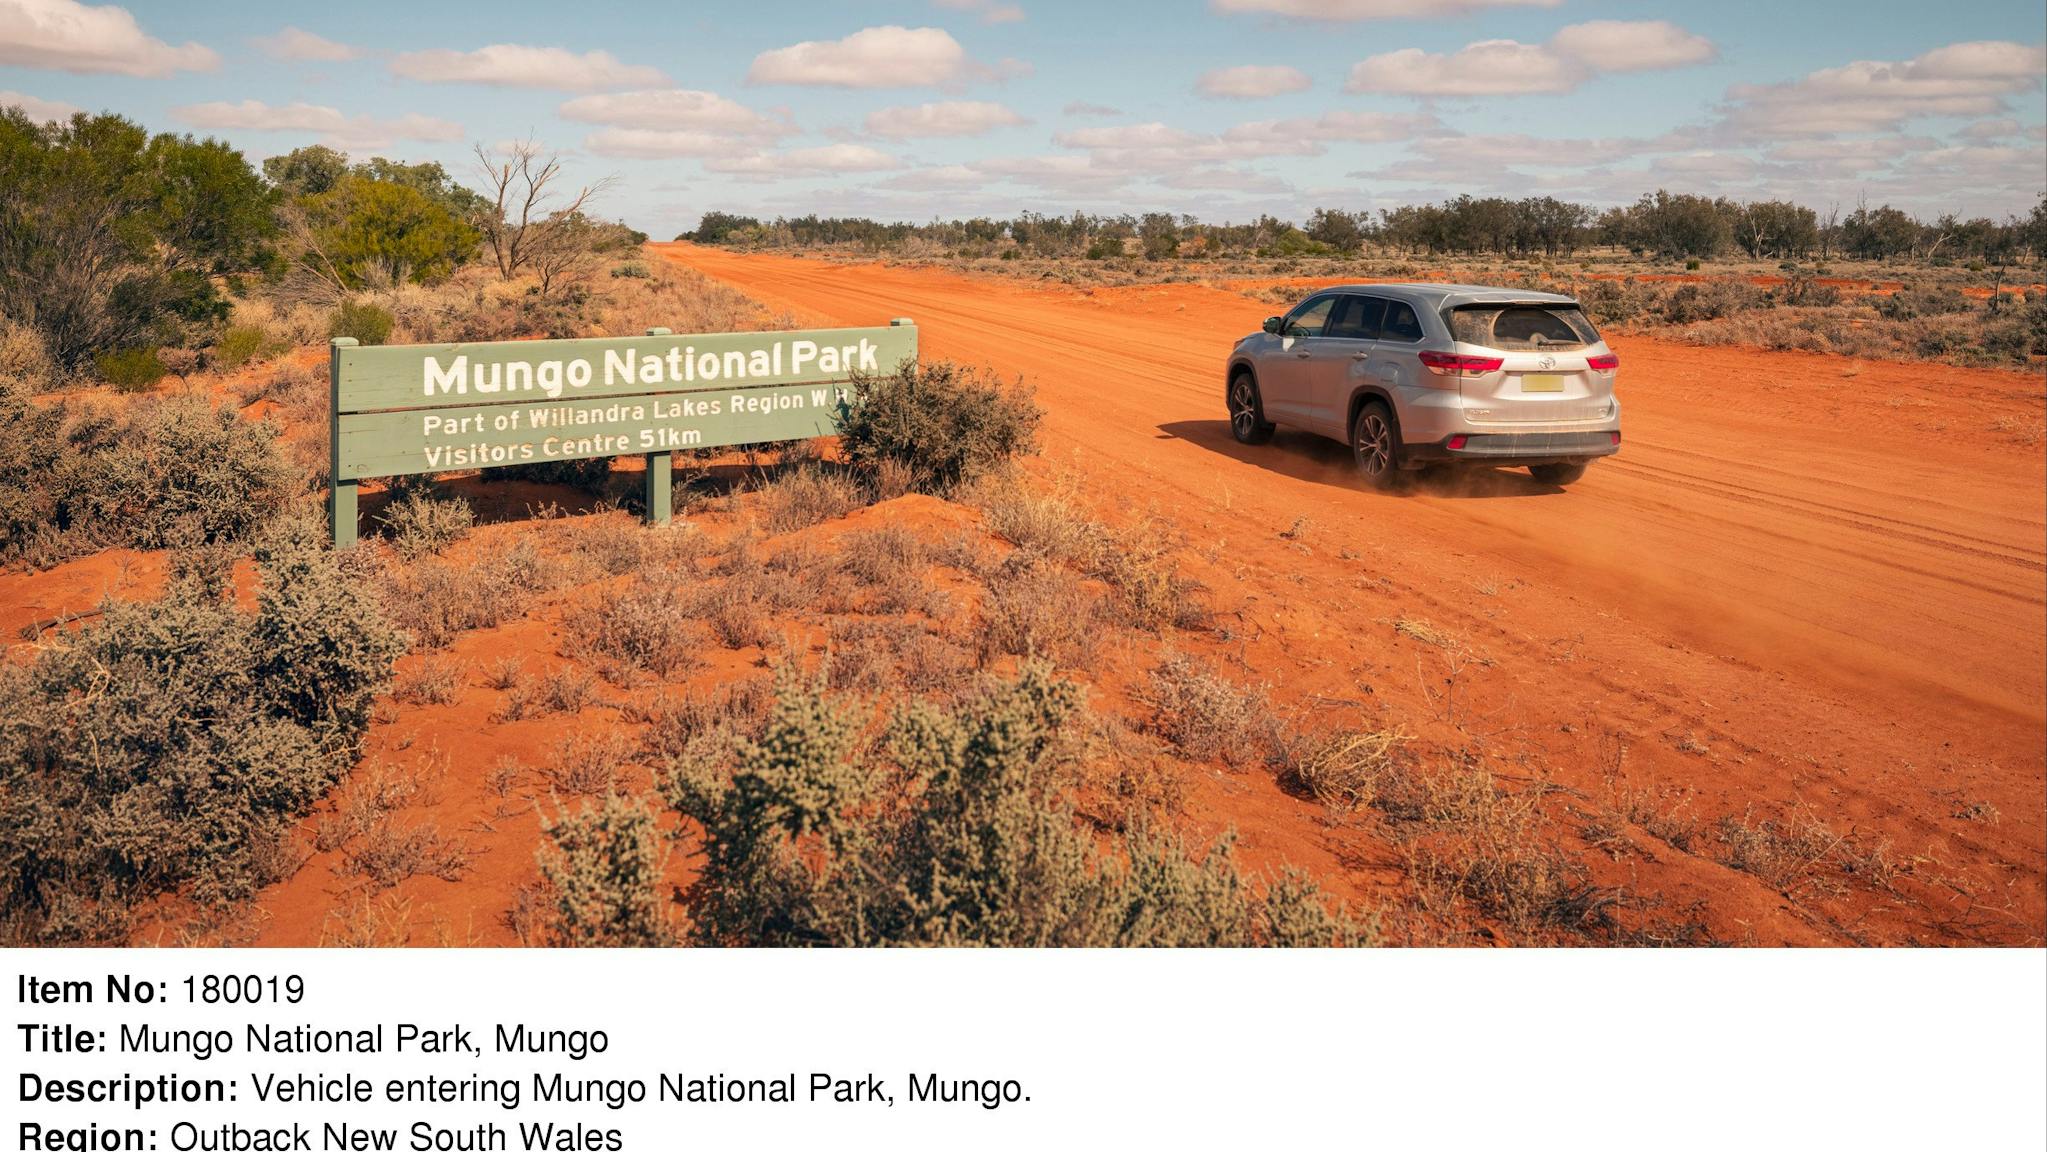 Vehicle entering Mungo National Park